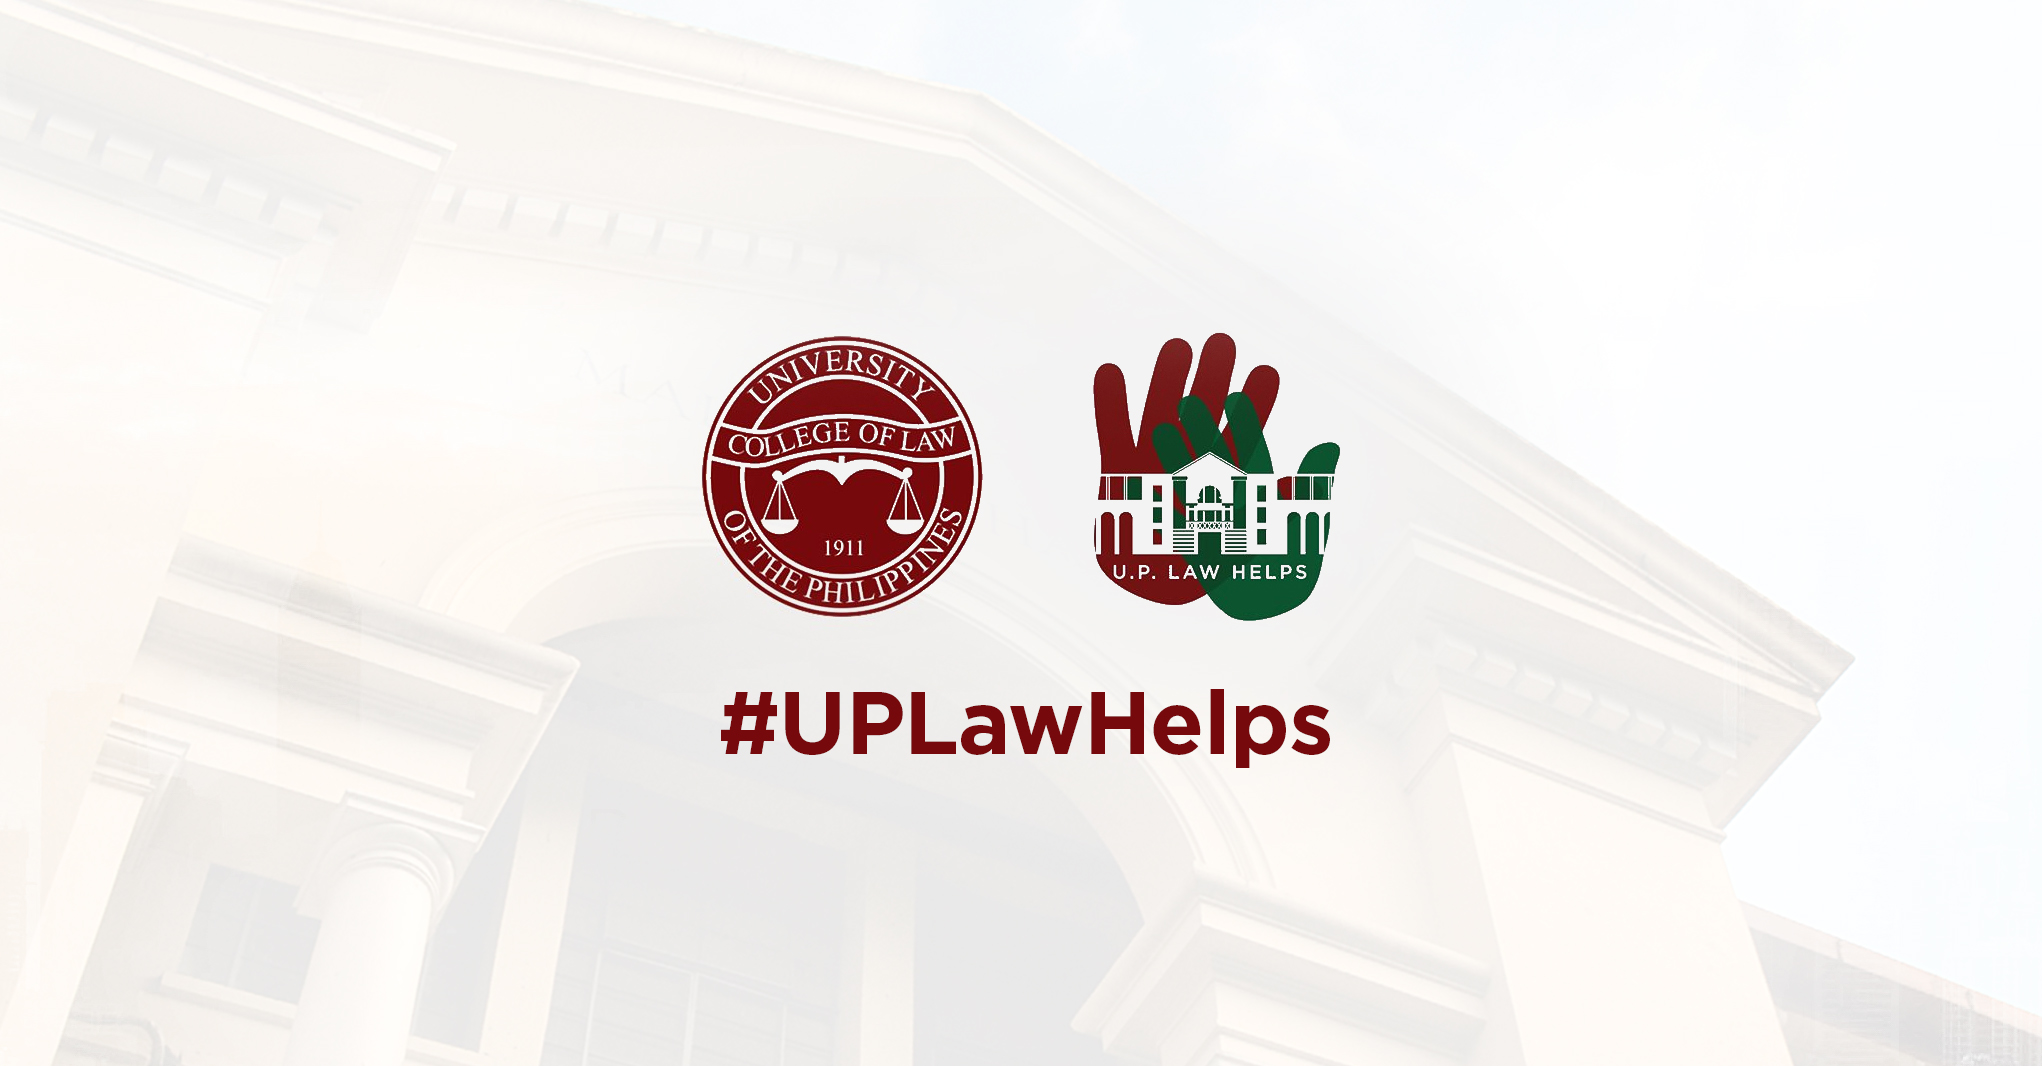 Dean Fides Cordero-Tan: UP Law Helps Online Legal Assistance Goes Live Monday, 20 April